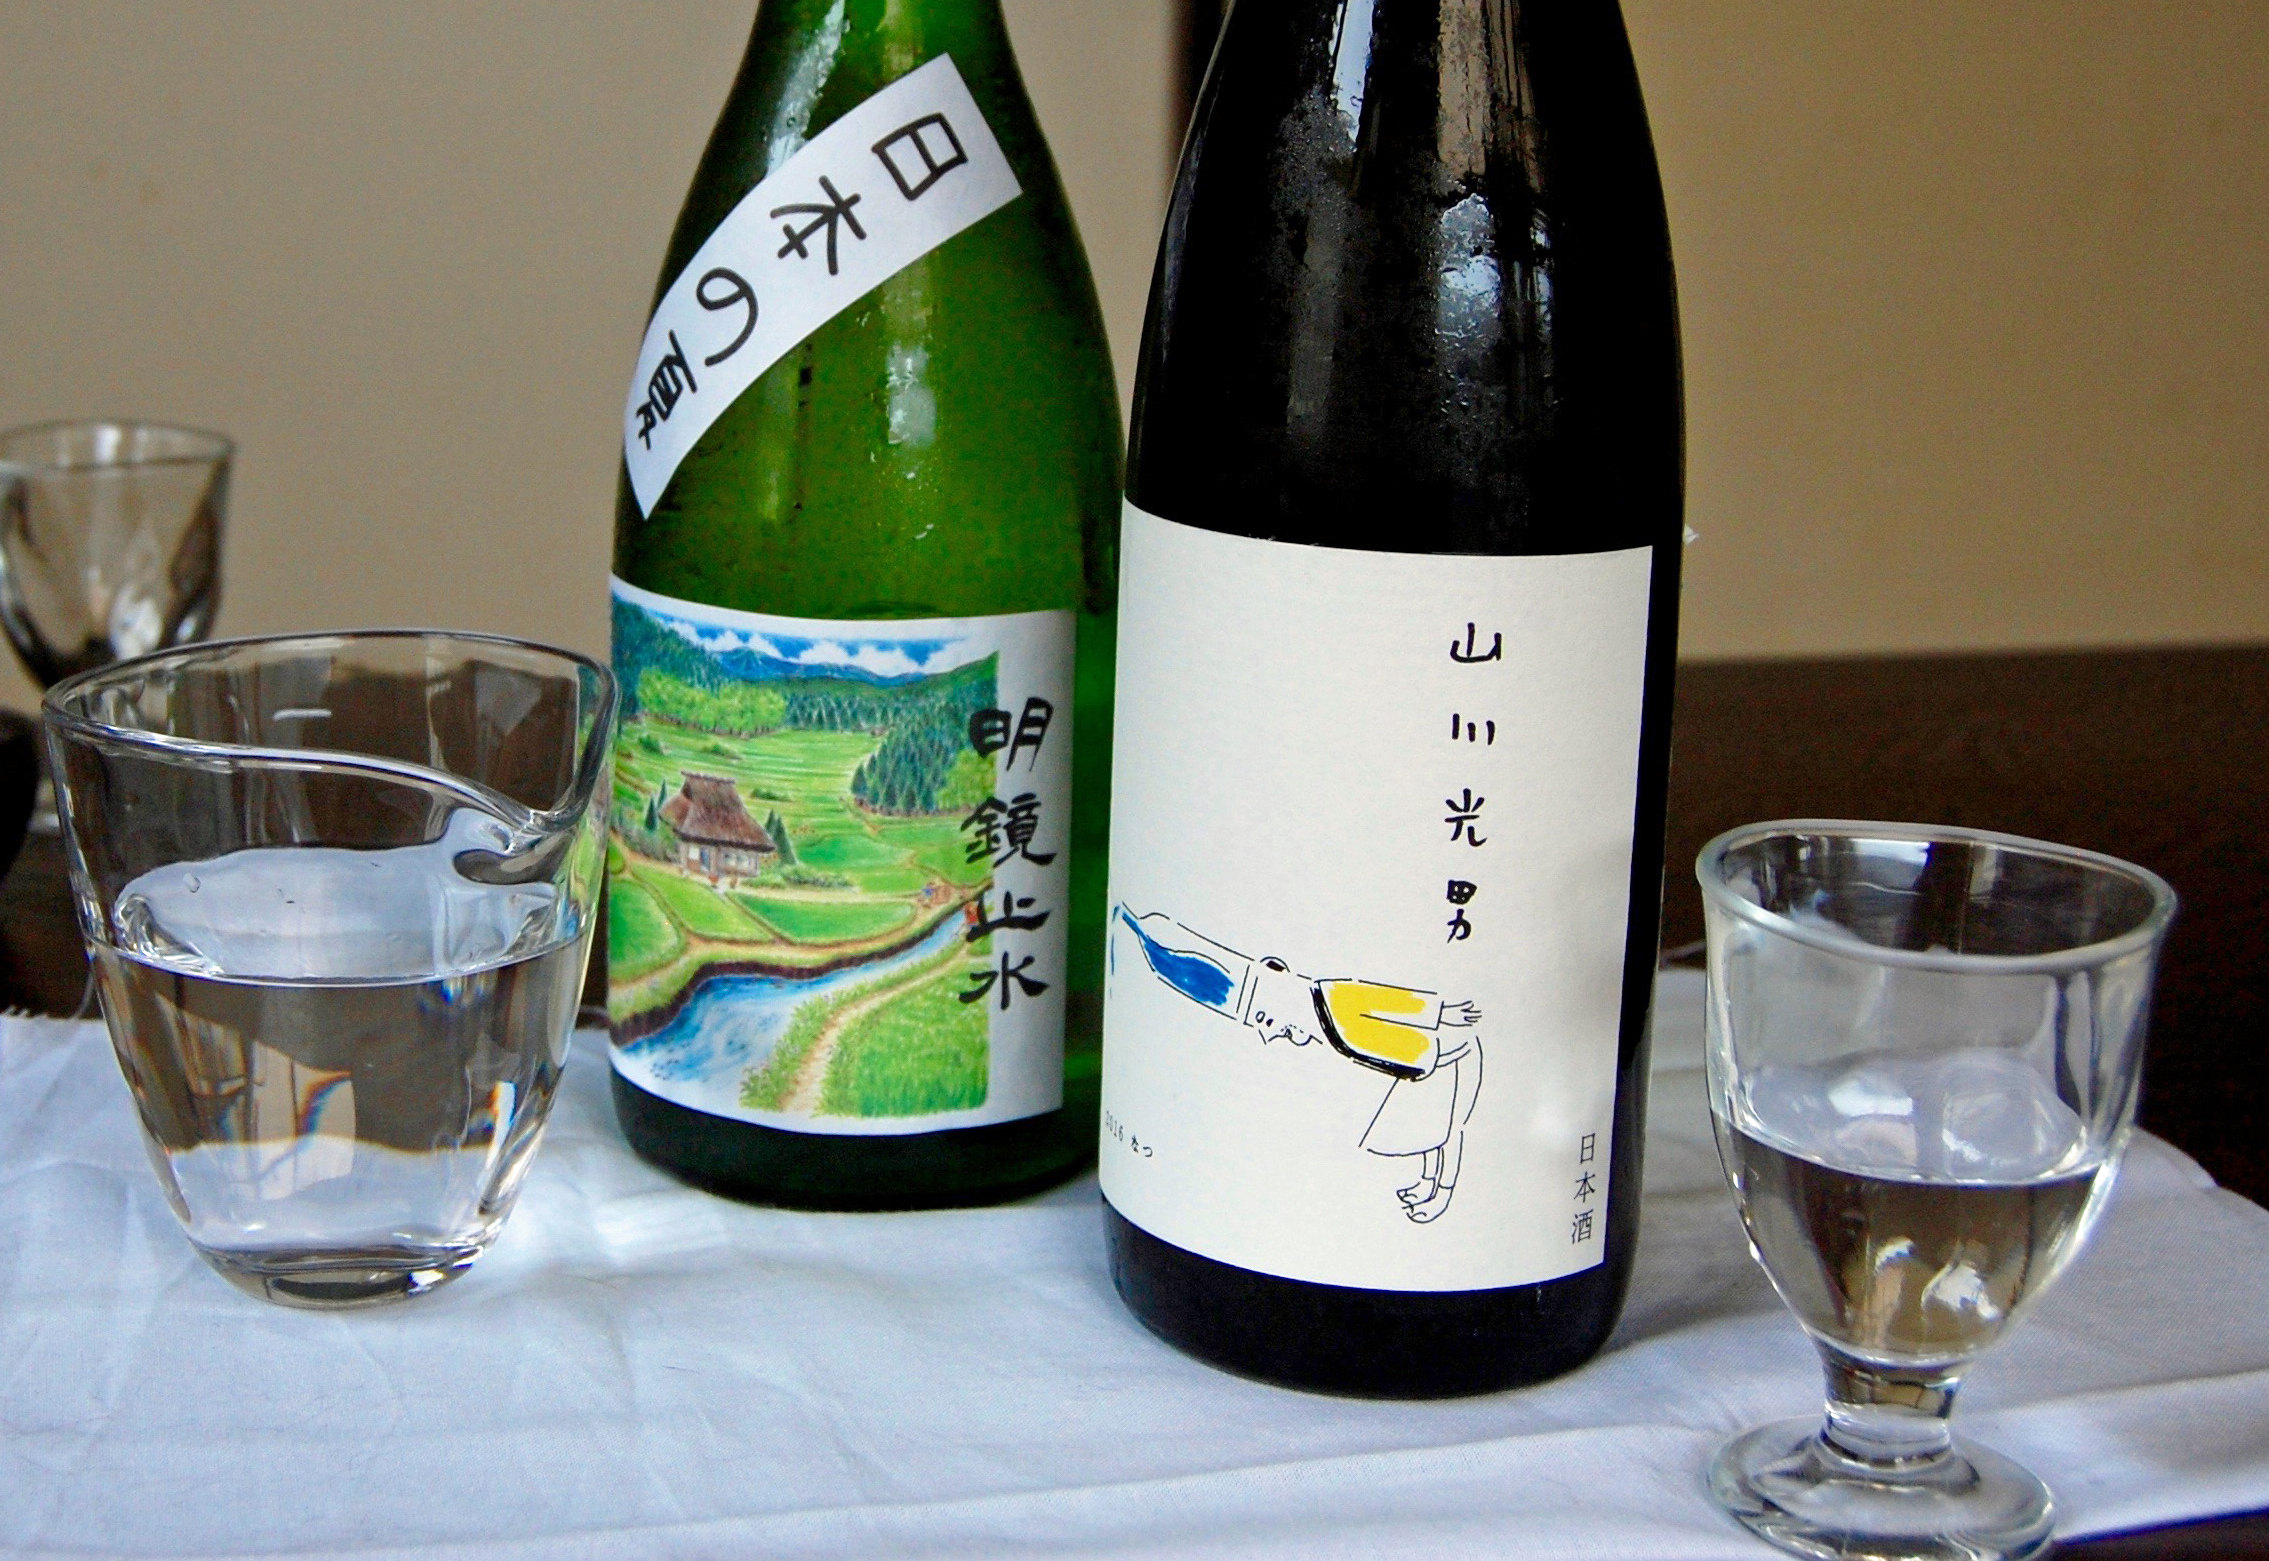 Meikyo Shisui Nihon no Natsu and Yamakawa Mitsuo 2016 Natsu, two types of nastuzake (summer sake) | MELINDA JOE